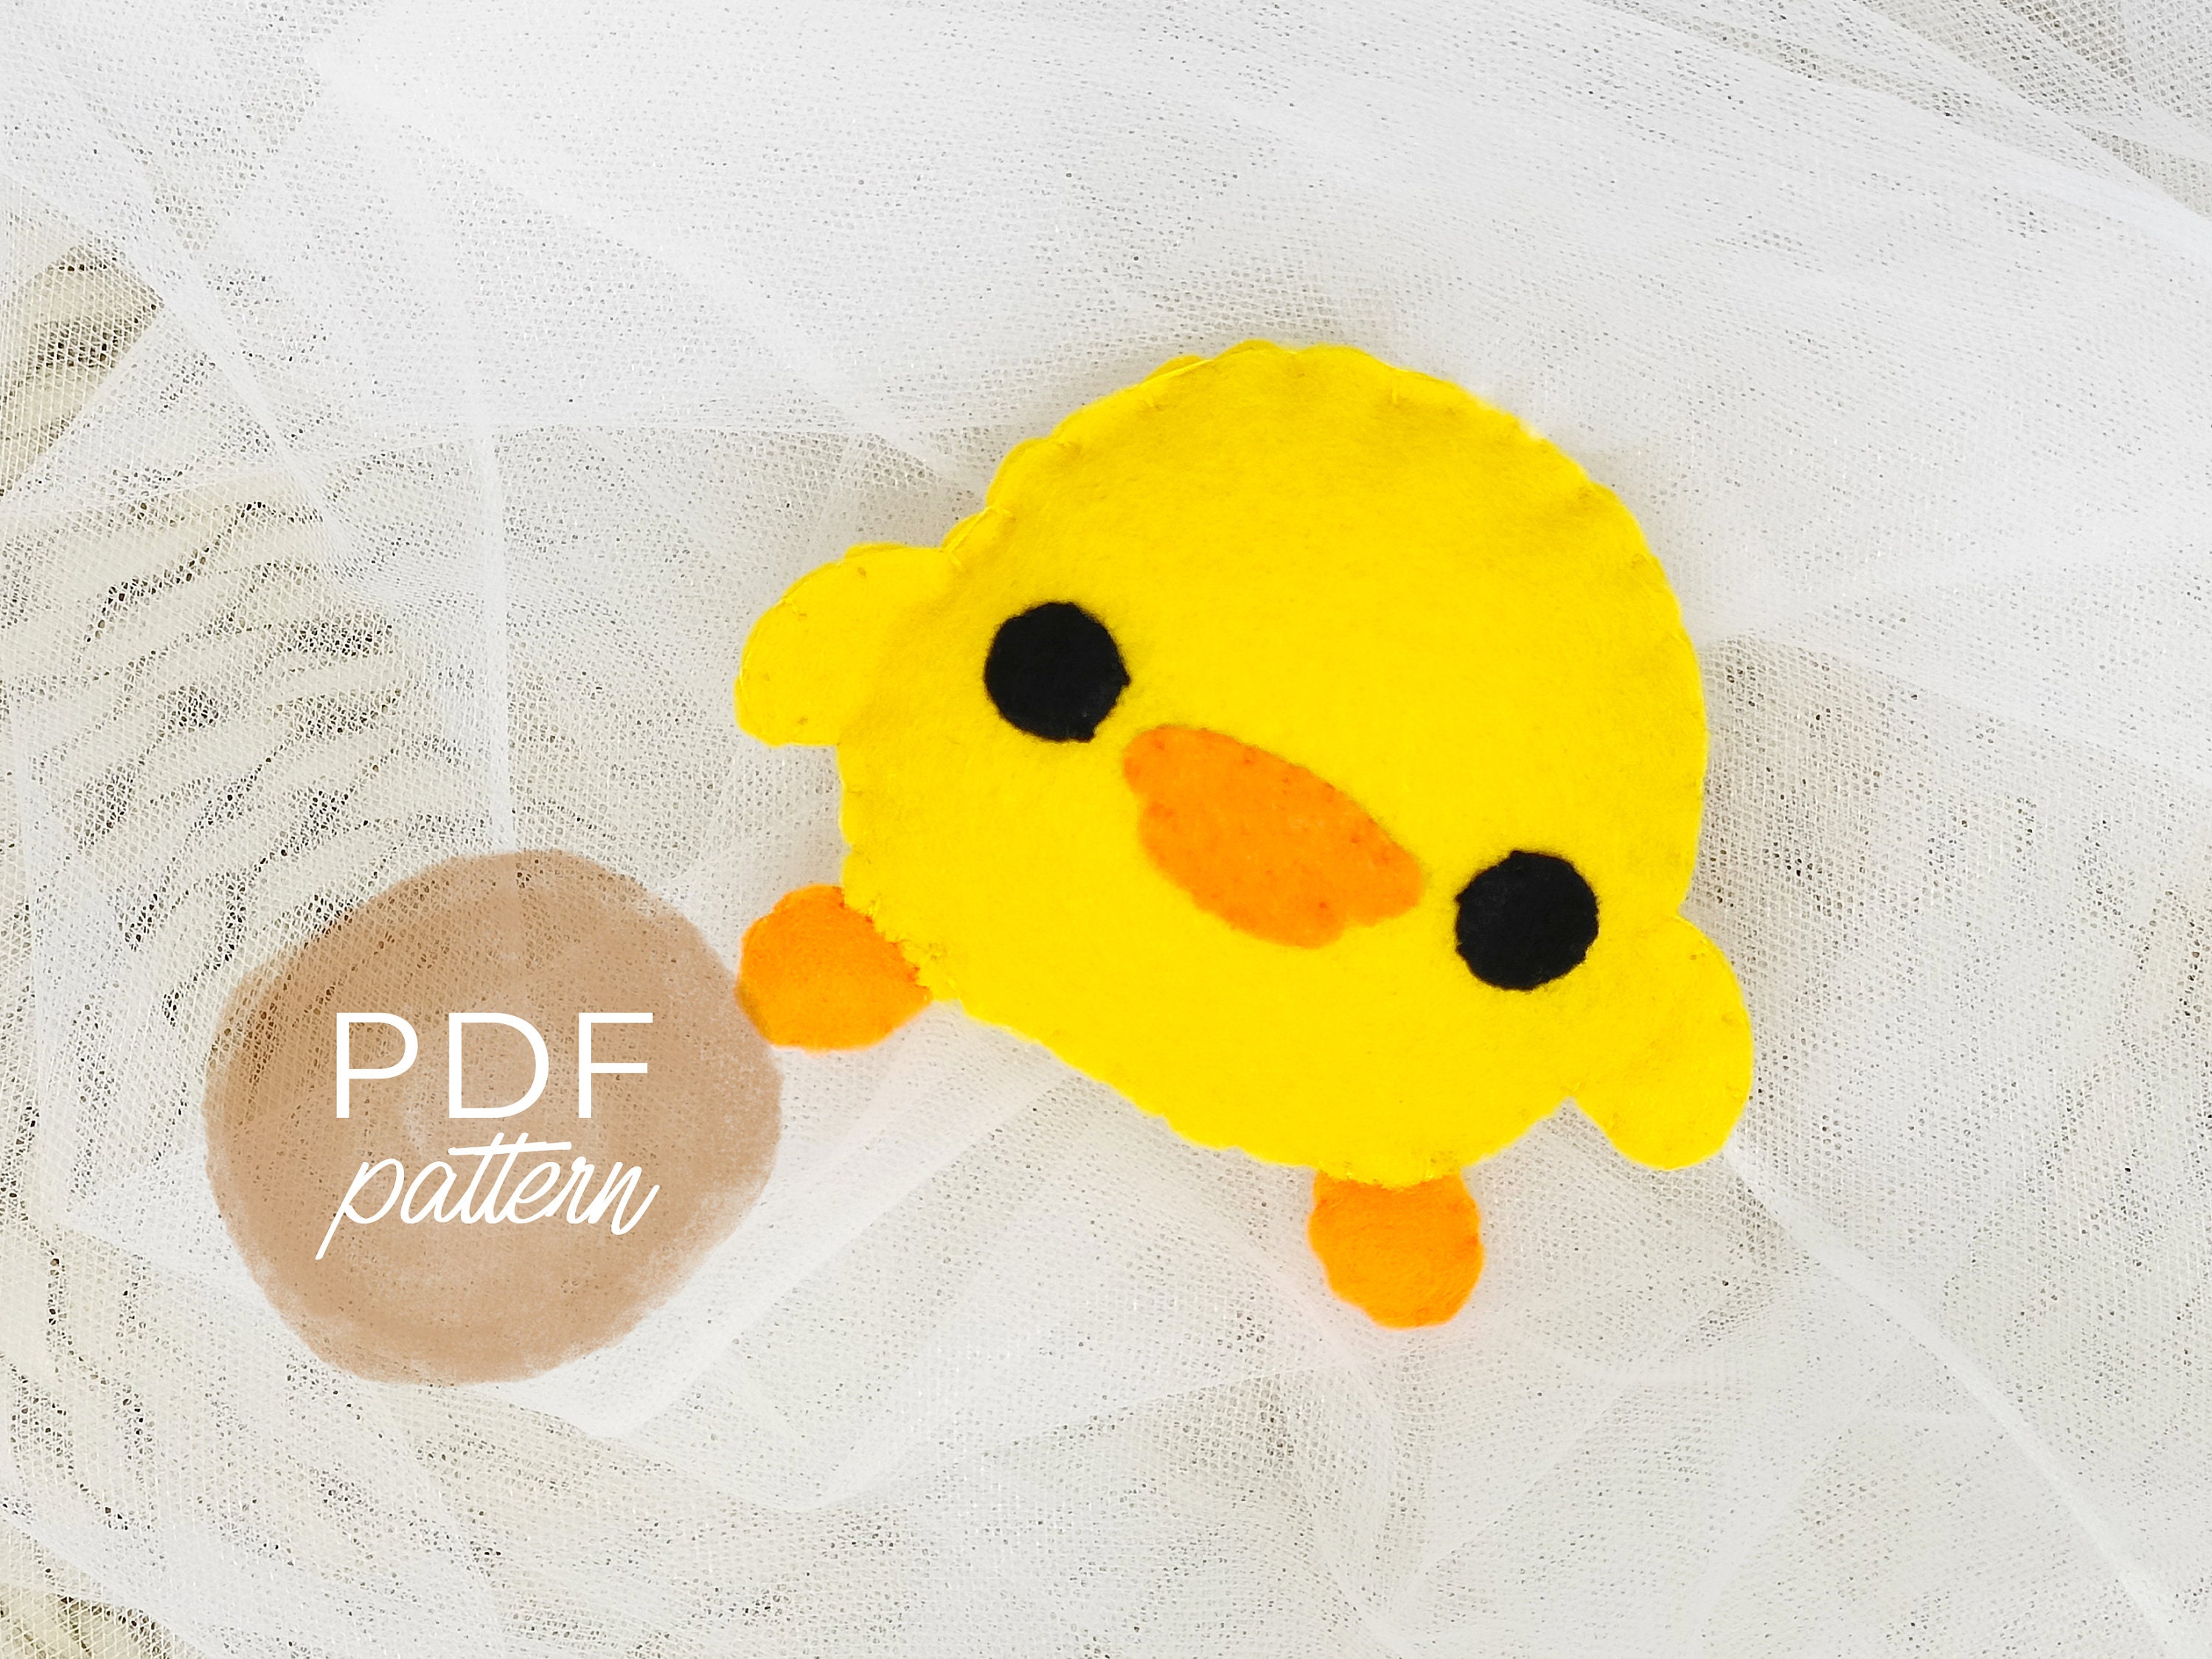 Duckling Parade Plush Stuffed Animal Sewing Pattern PDF